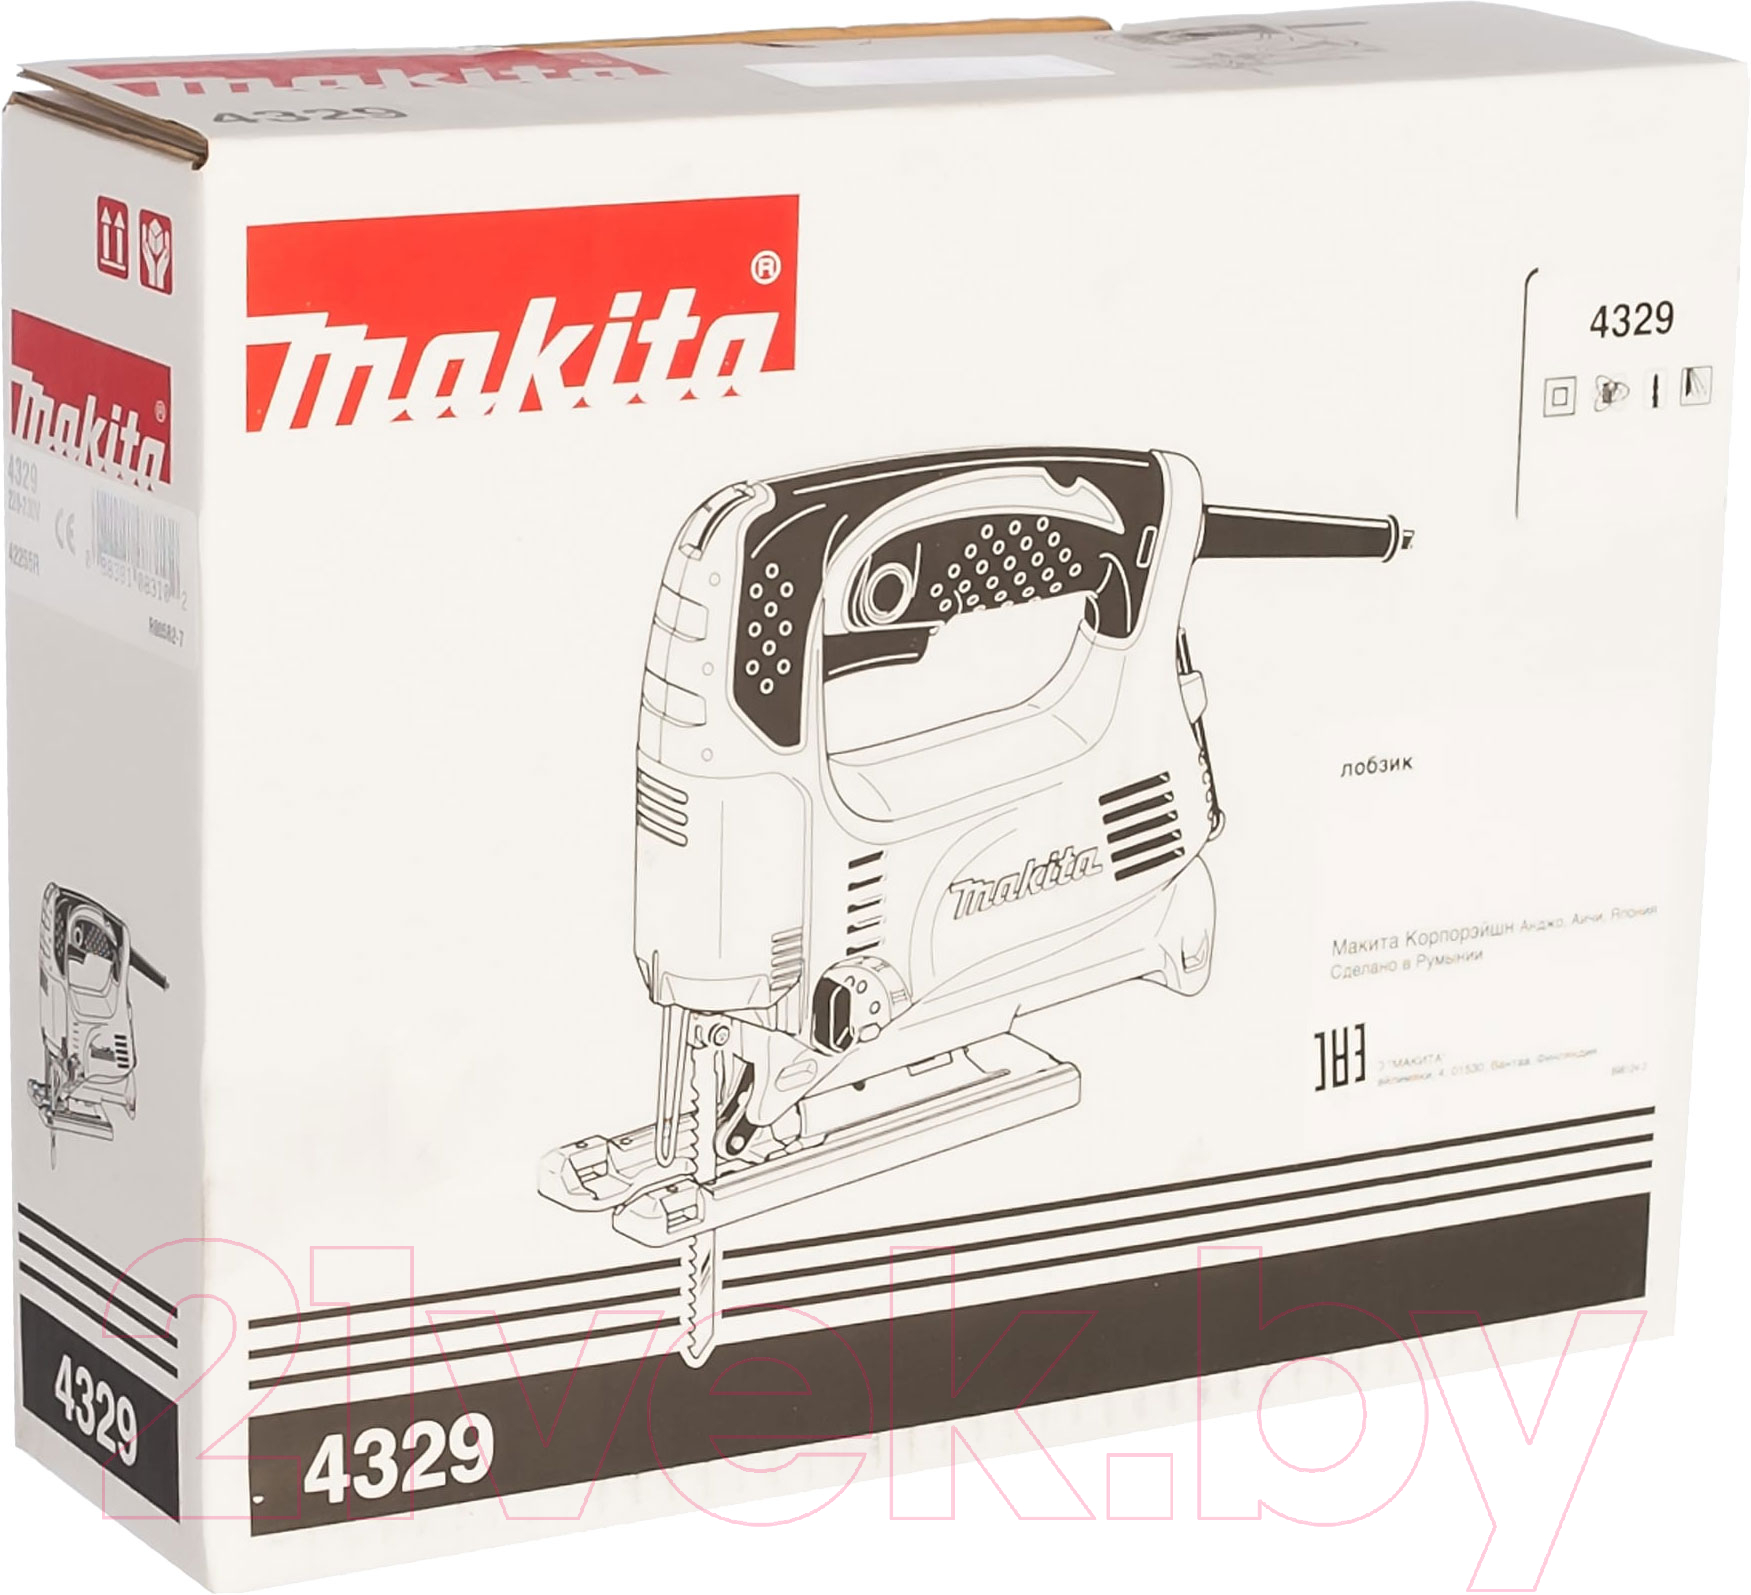 Профессиональный электролобзик Makita 4329X1